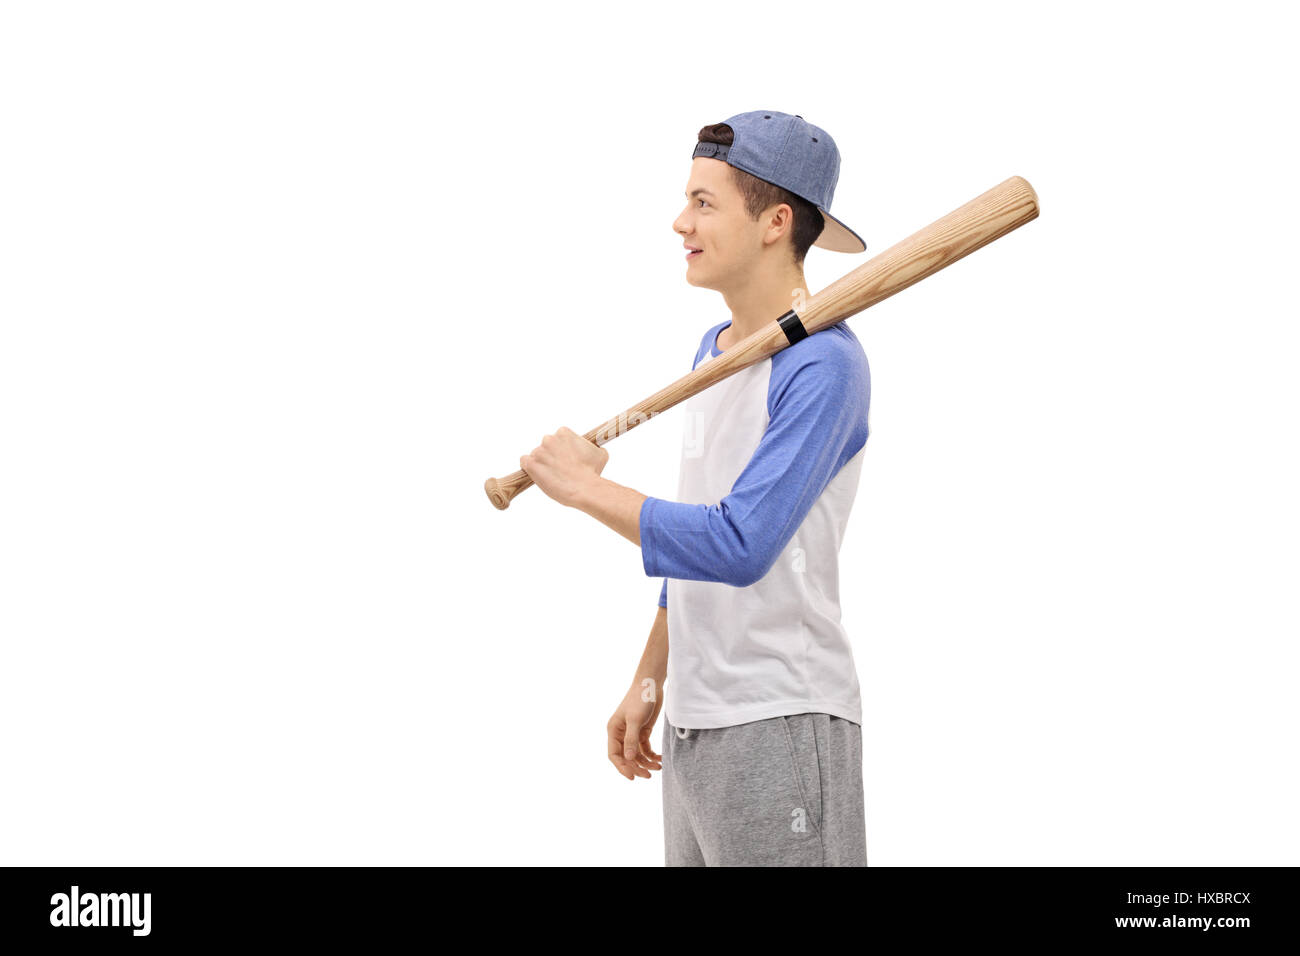 Colpo di profilo di un adolescente con una mazza da baseball e un cappuccio isolato su sfondo bianco Foto Stock